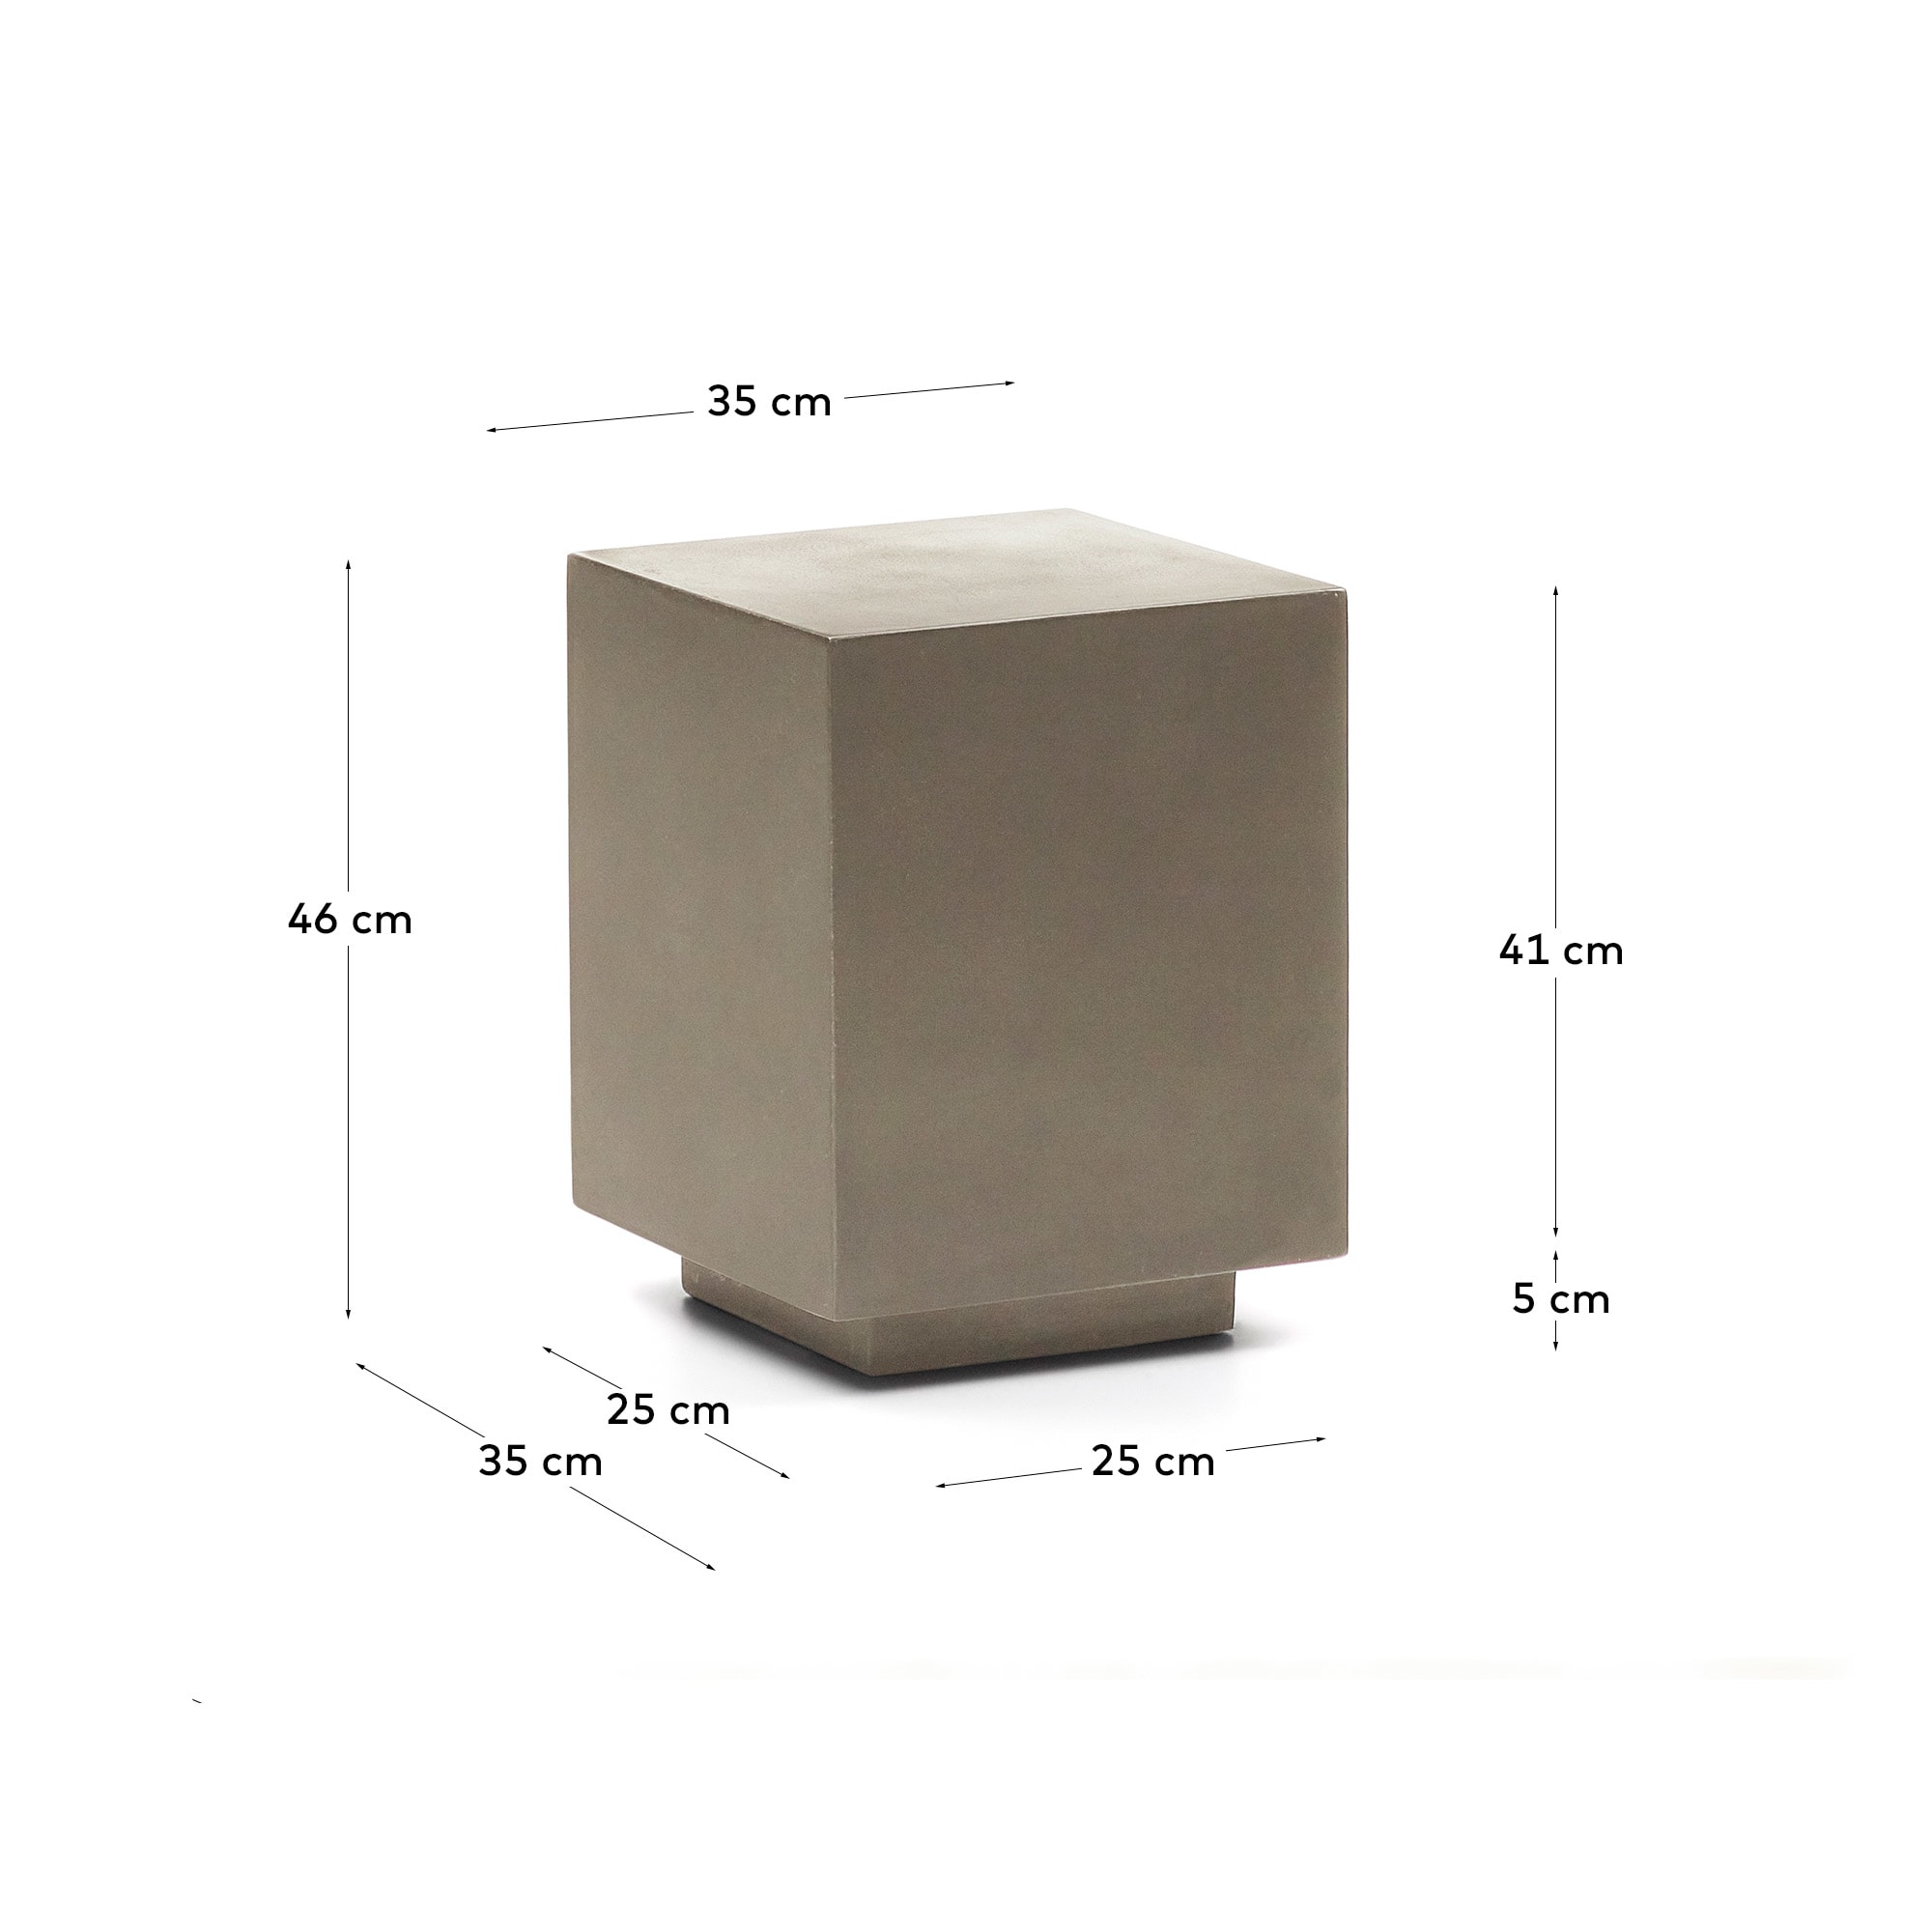 루스텔라 시멘트 사이드 테이블 35 x 35cm - 크기